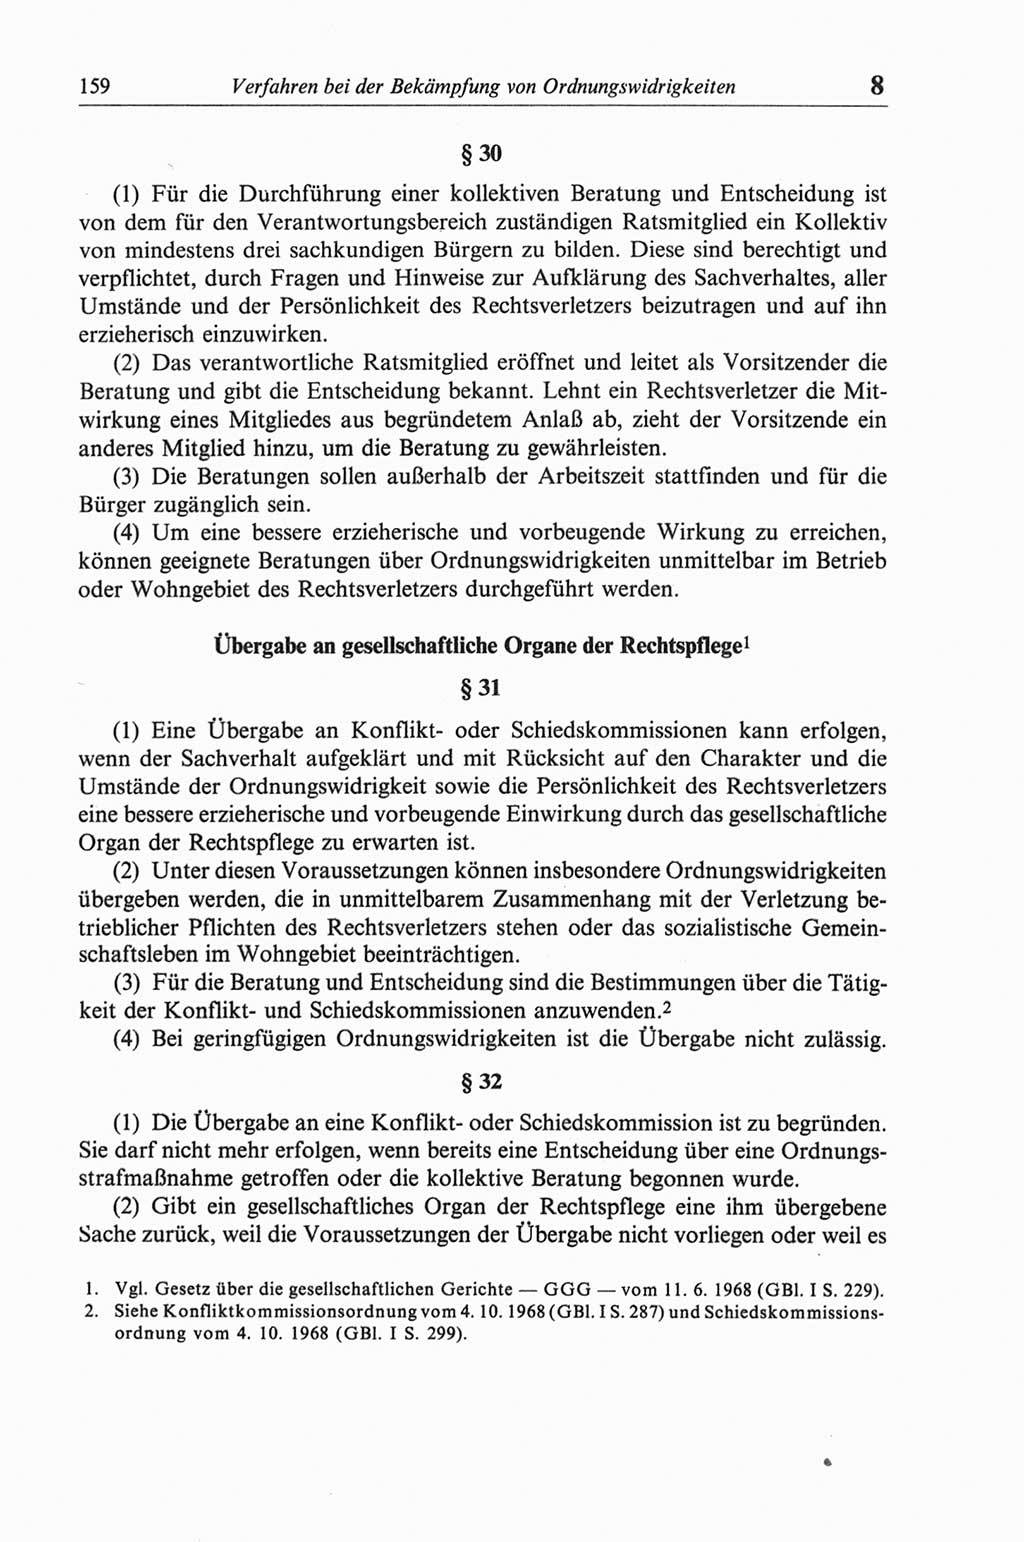 Strafgesetzbuch (StGB) der Deutschen Demokratischen Republik (DDR) und angrenzende Gesetze und Bestimmungen 1968, Seite 159 (StGB Ges. Best. DDR 1968, S. 159)